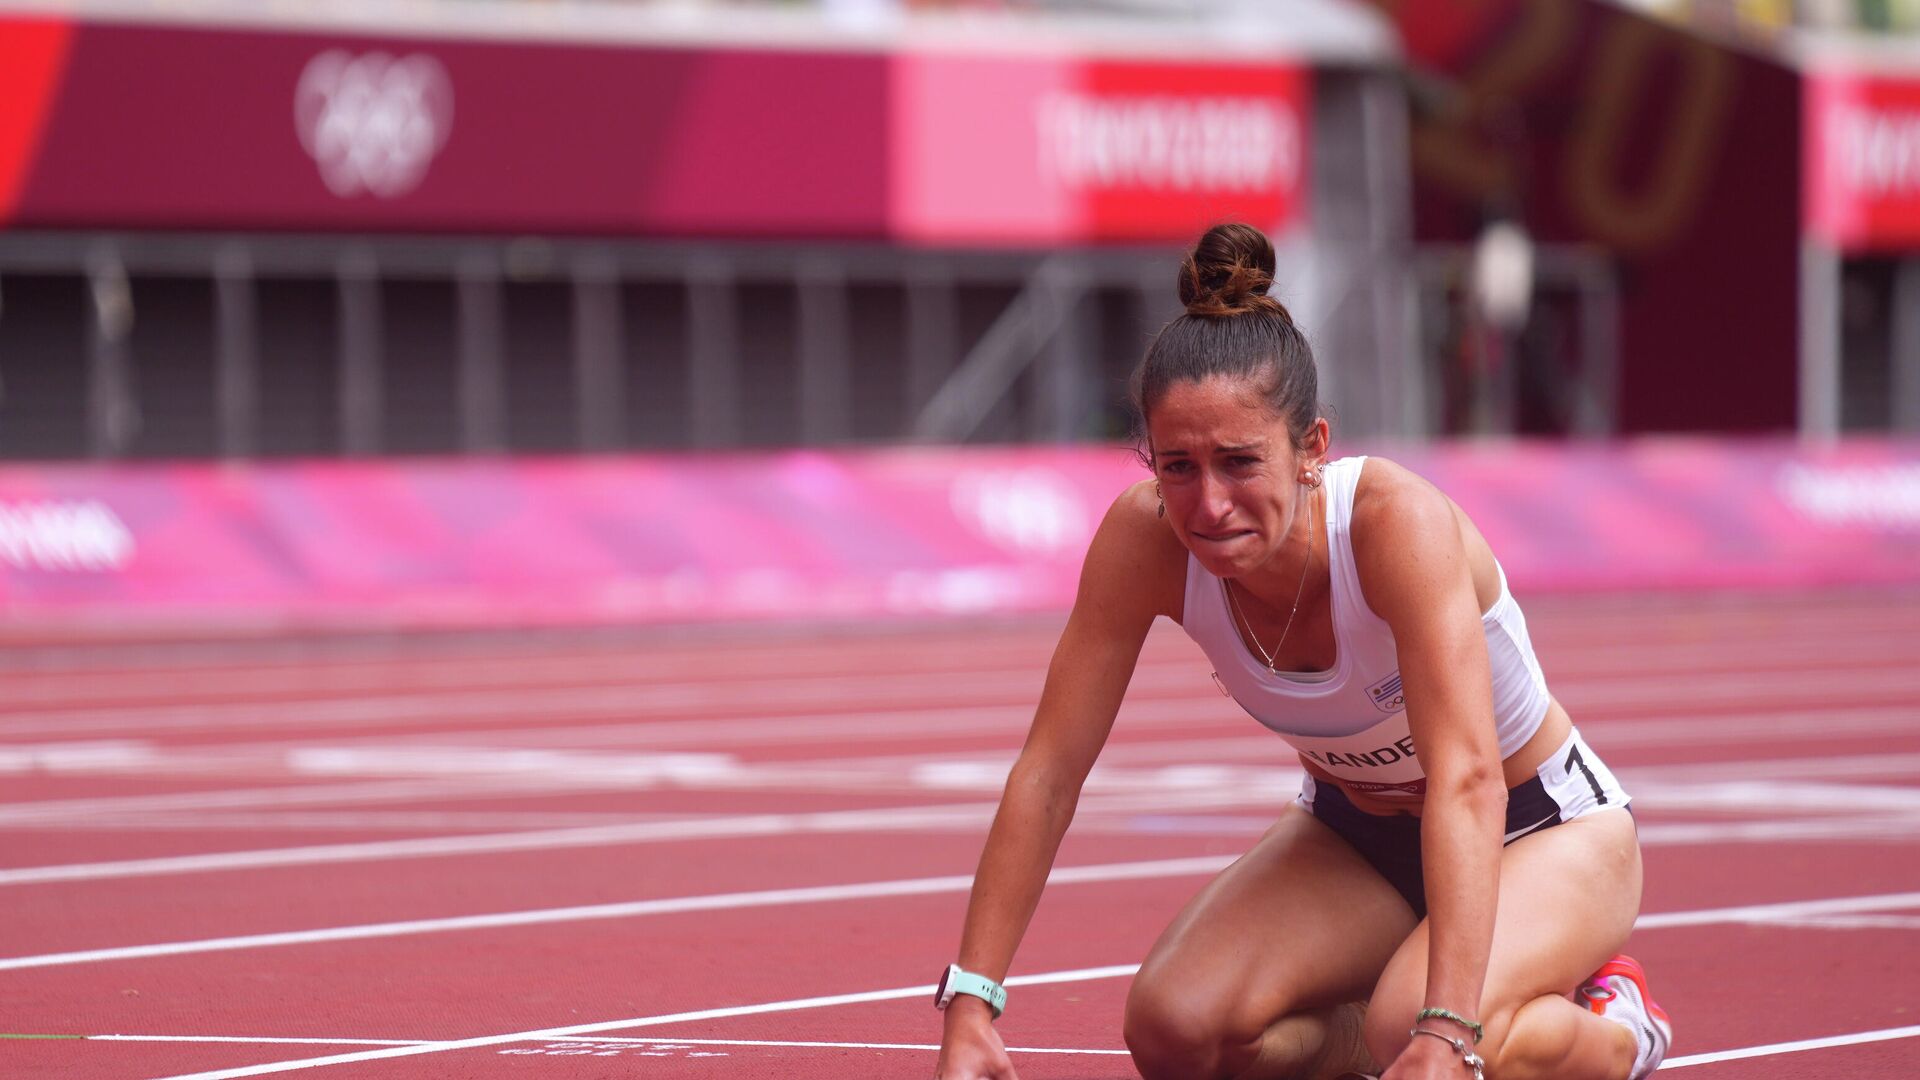 La atleta uruguaya María Pía Fernández emocionada tras completar la carrera de 1500 metros a pesar de una lesión - Sputnik Mundo, 1920, 02.08.2021